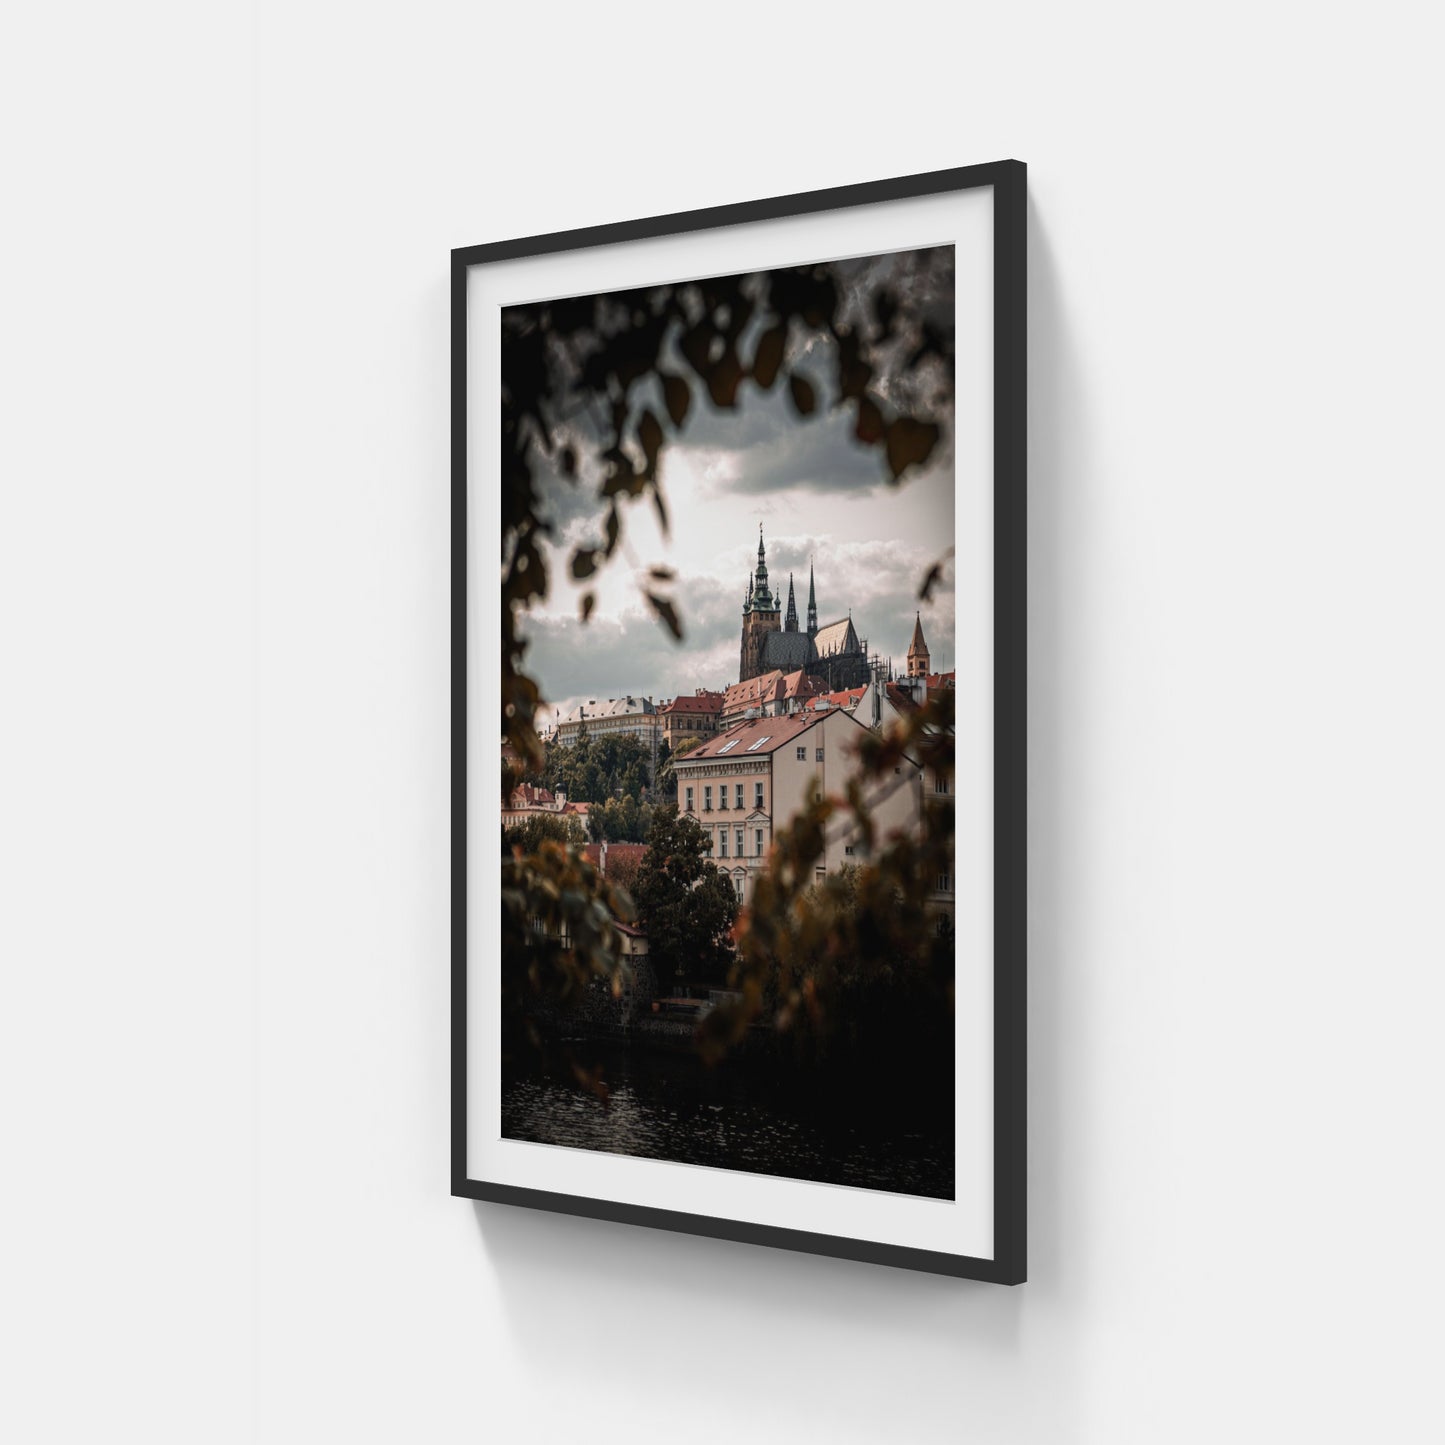 Through The Trees – Pražský hrad, CZ, 2020